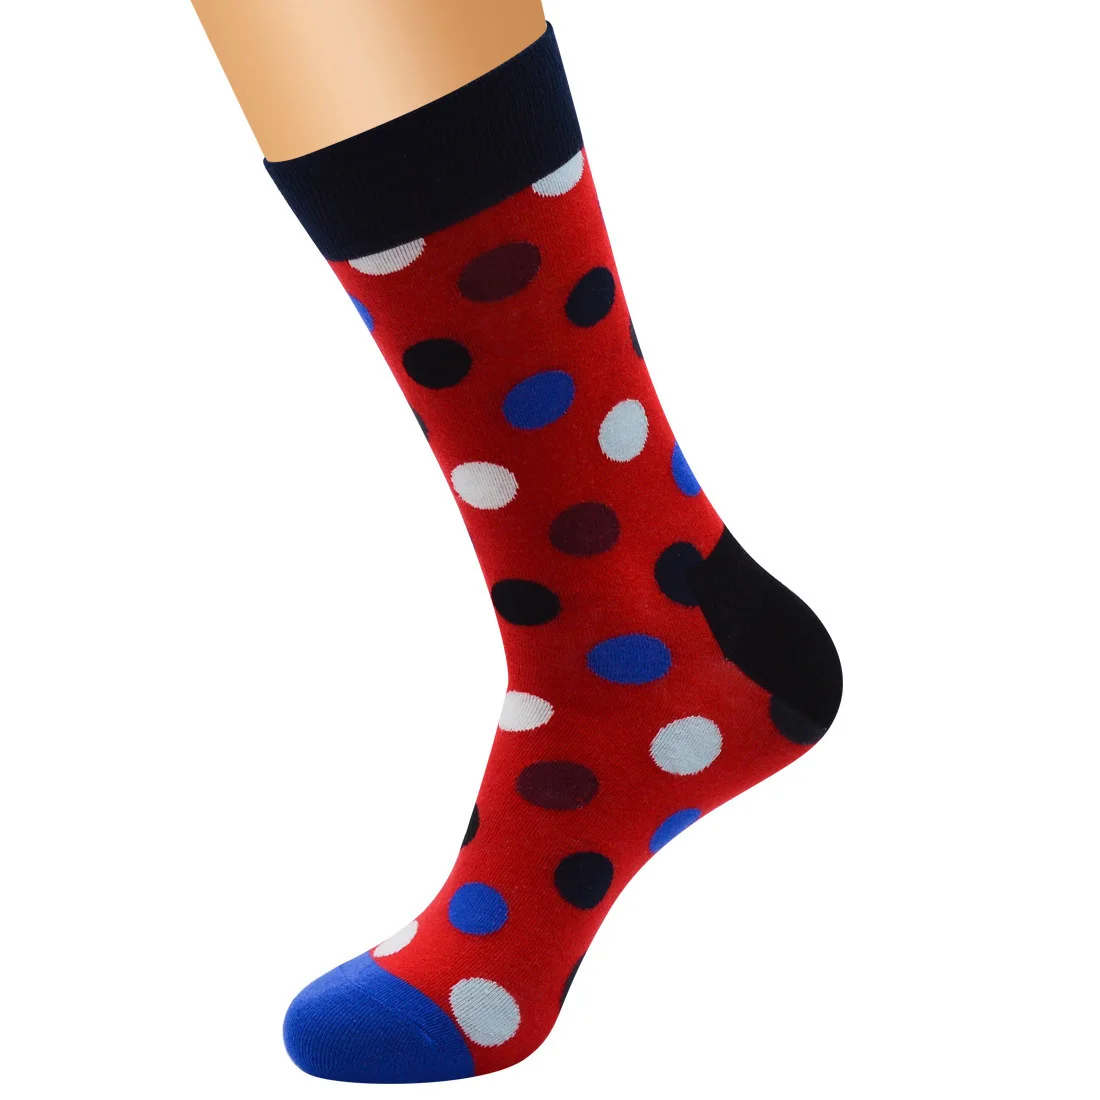 PEONFLY Новое поступление счастливые мужские носки красочные Dot дизайн чесаные хлопковые носки повседневные носки забавный подарок счастье - Цвет: Treasure Blue Socks